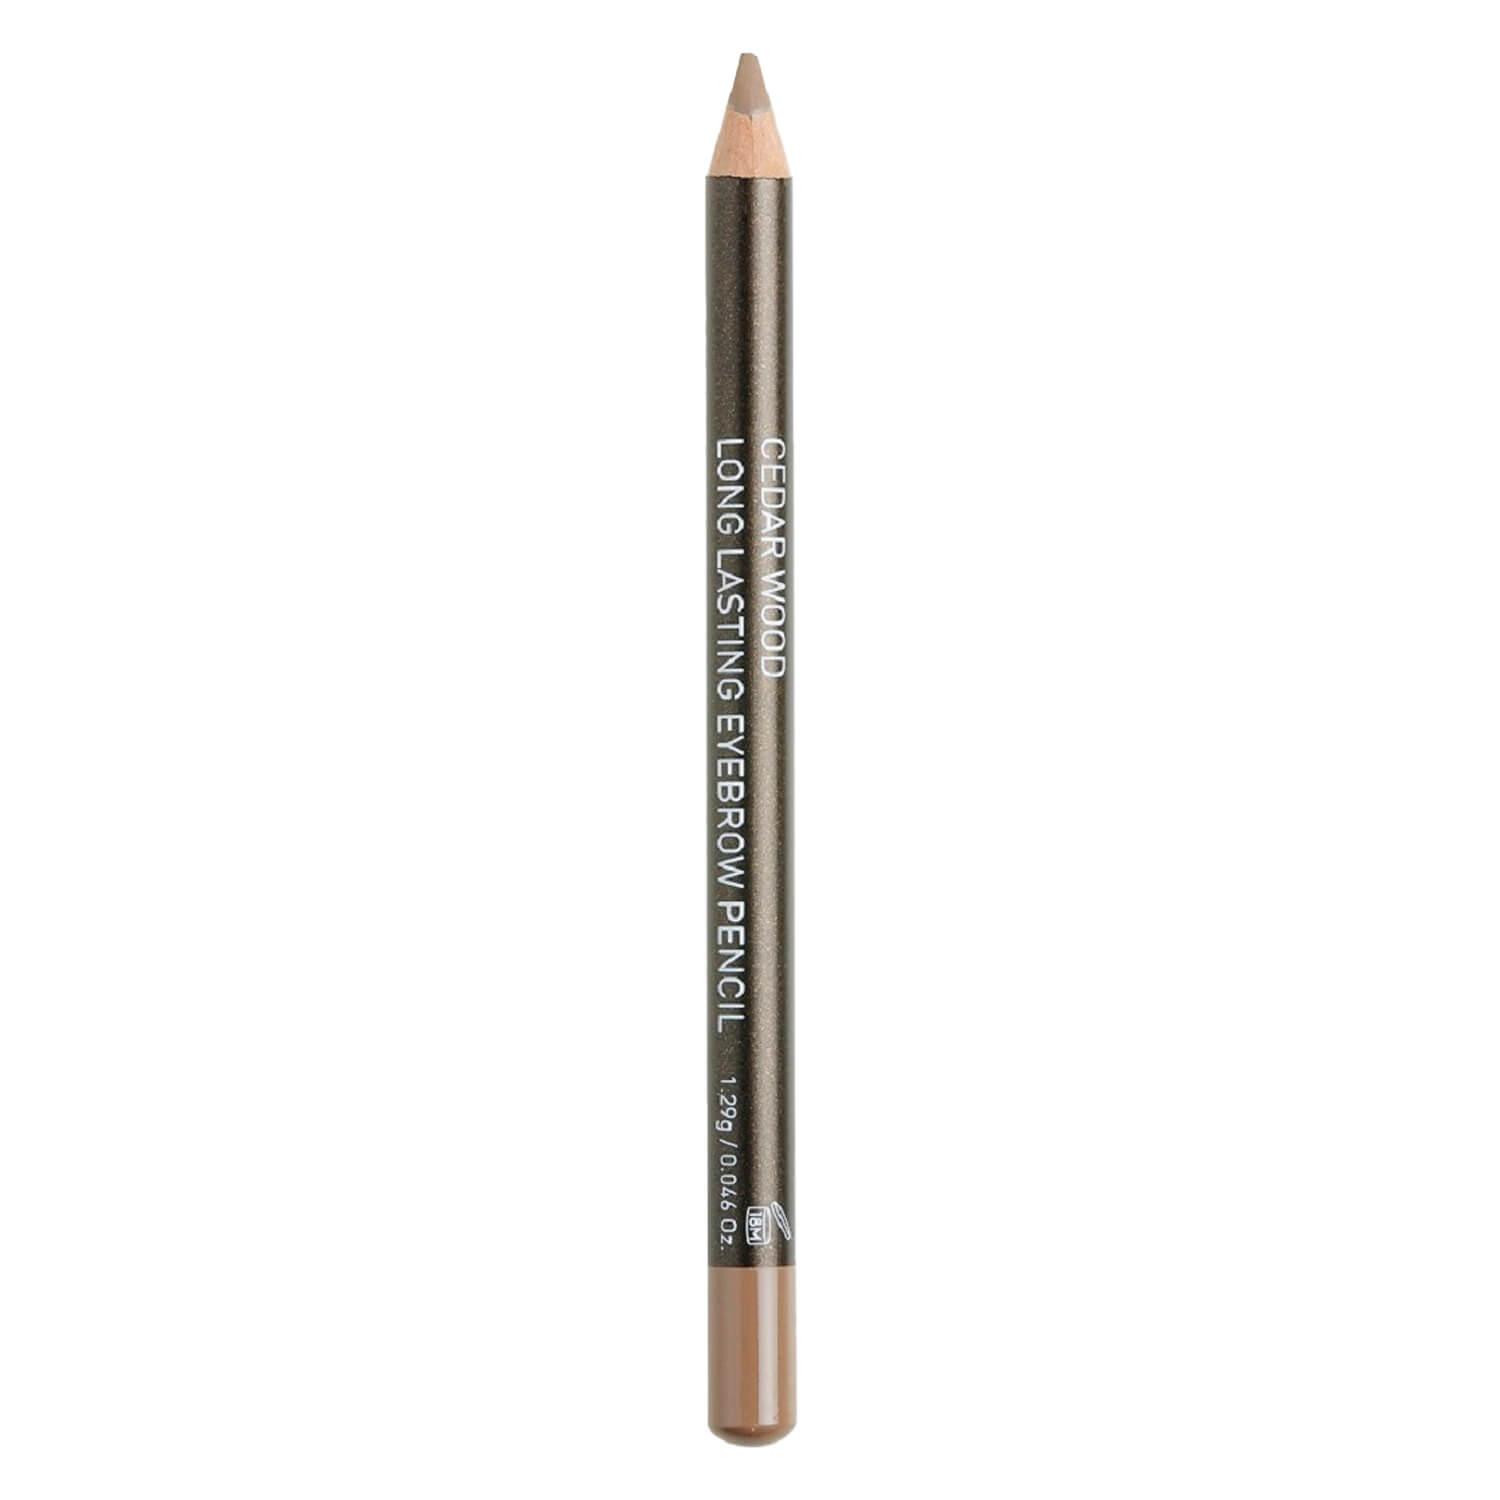 Korres Brows - Cedar Eyebrow Pencil No 2 Medium Shade